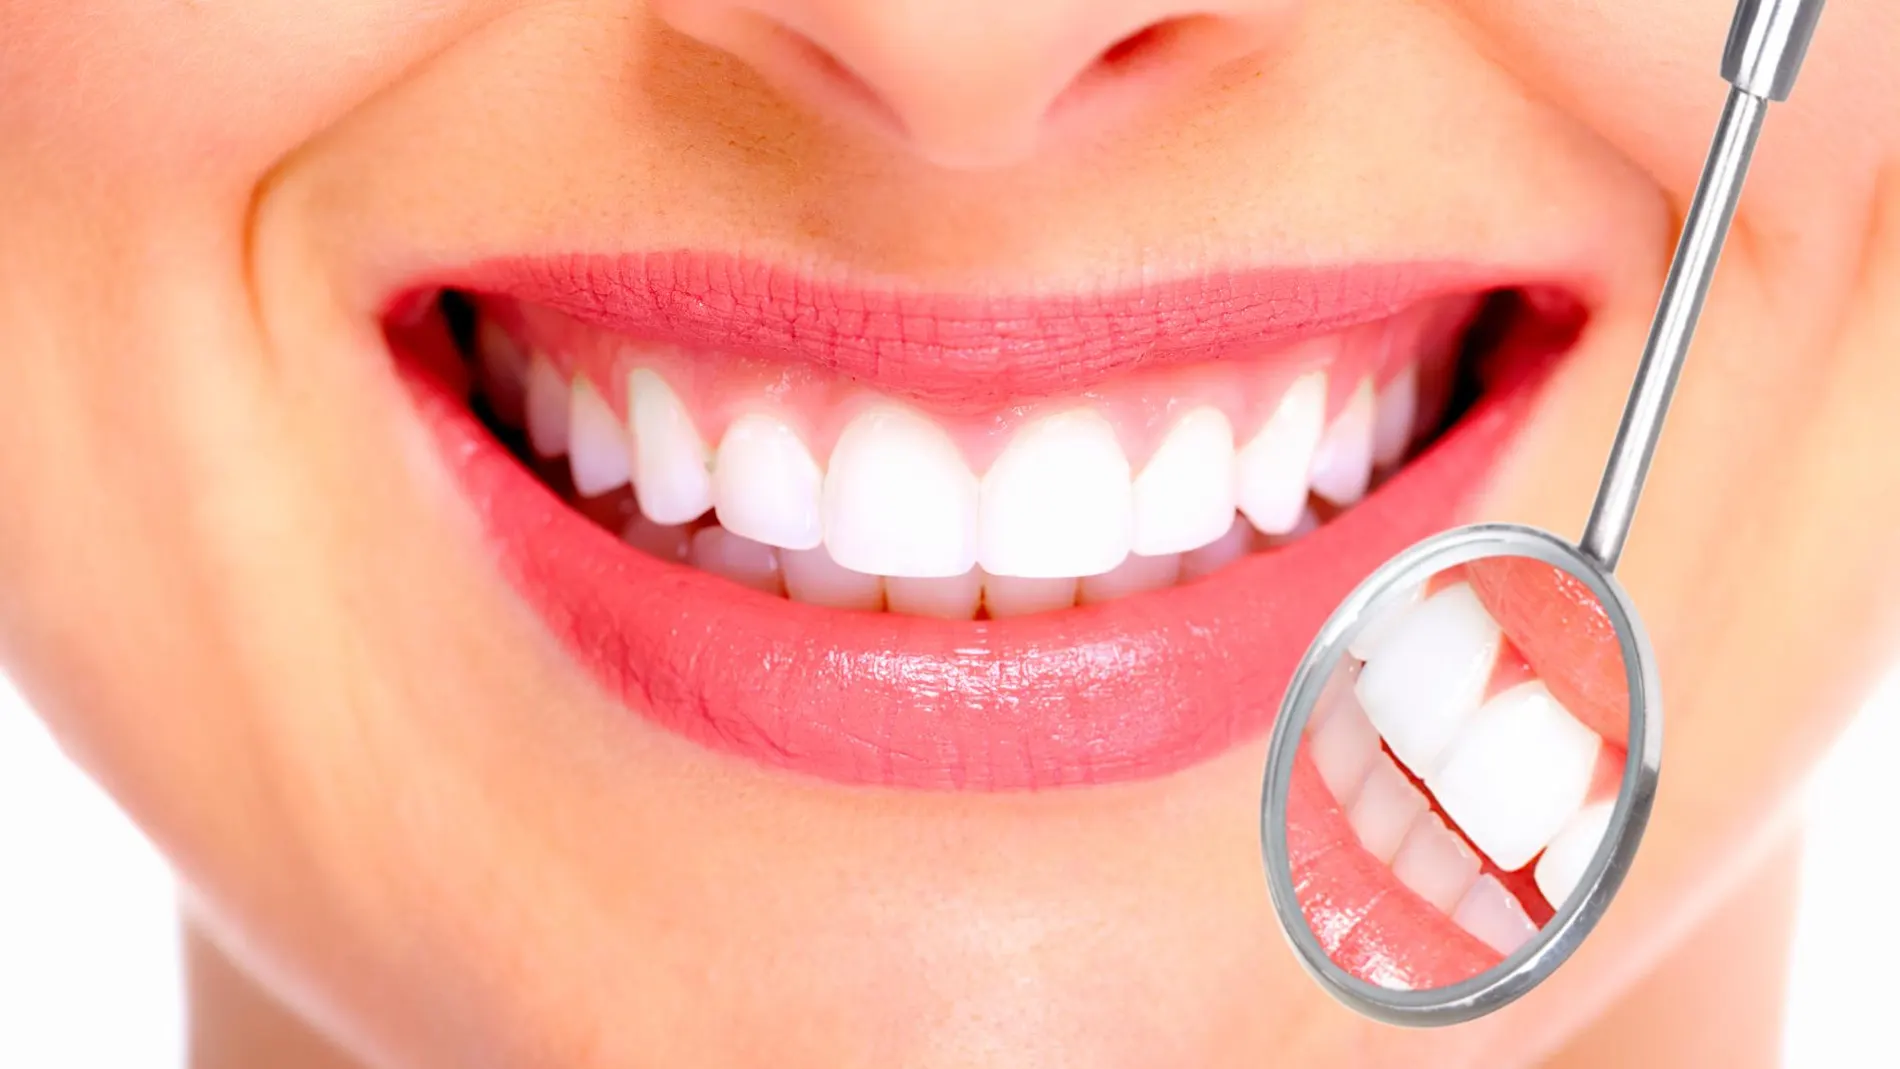 Uno de cada cuatro españoles padece actualmente gingivitis o enfermedad periodontal, según datos del Estudio de Salud Bucodental de Sanitas